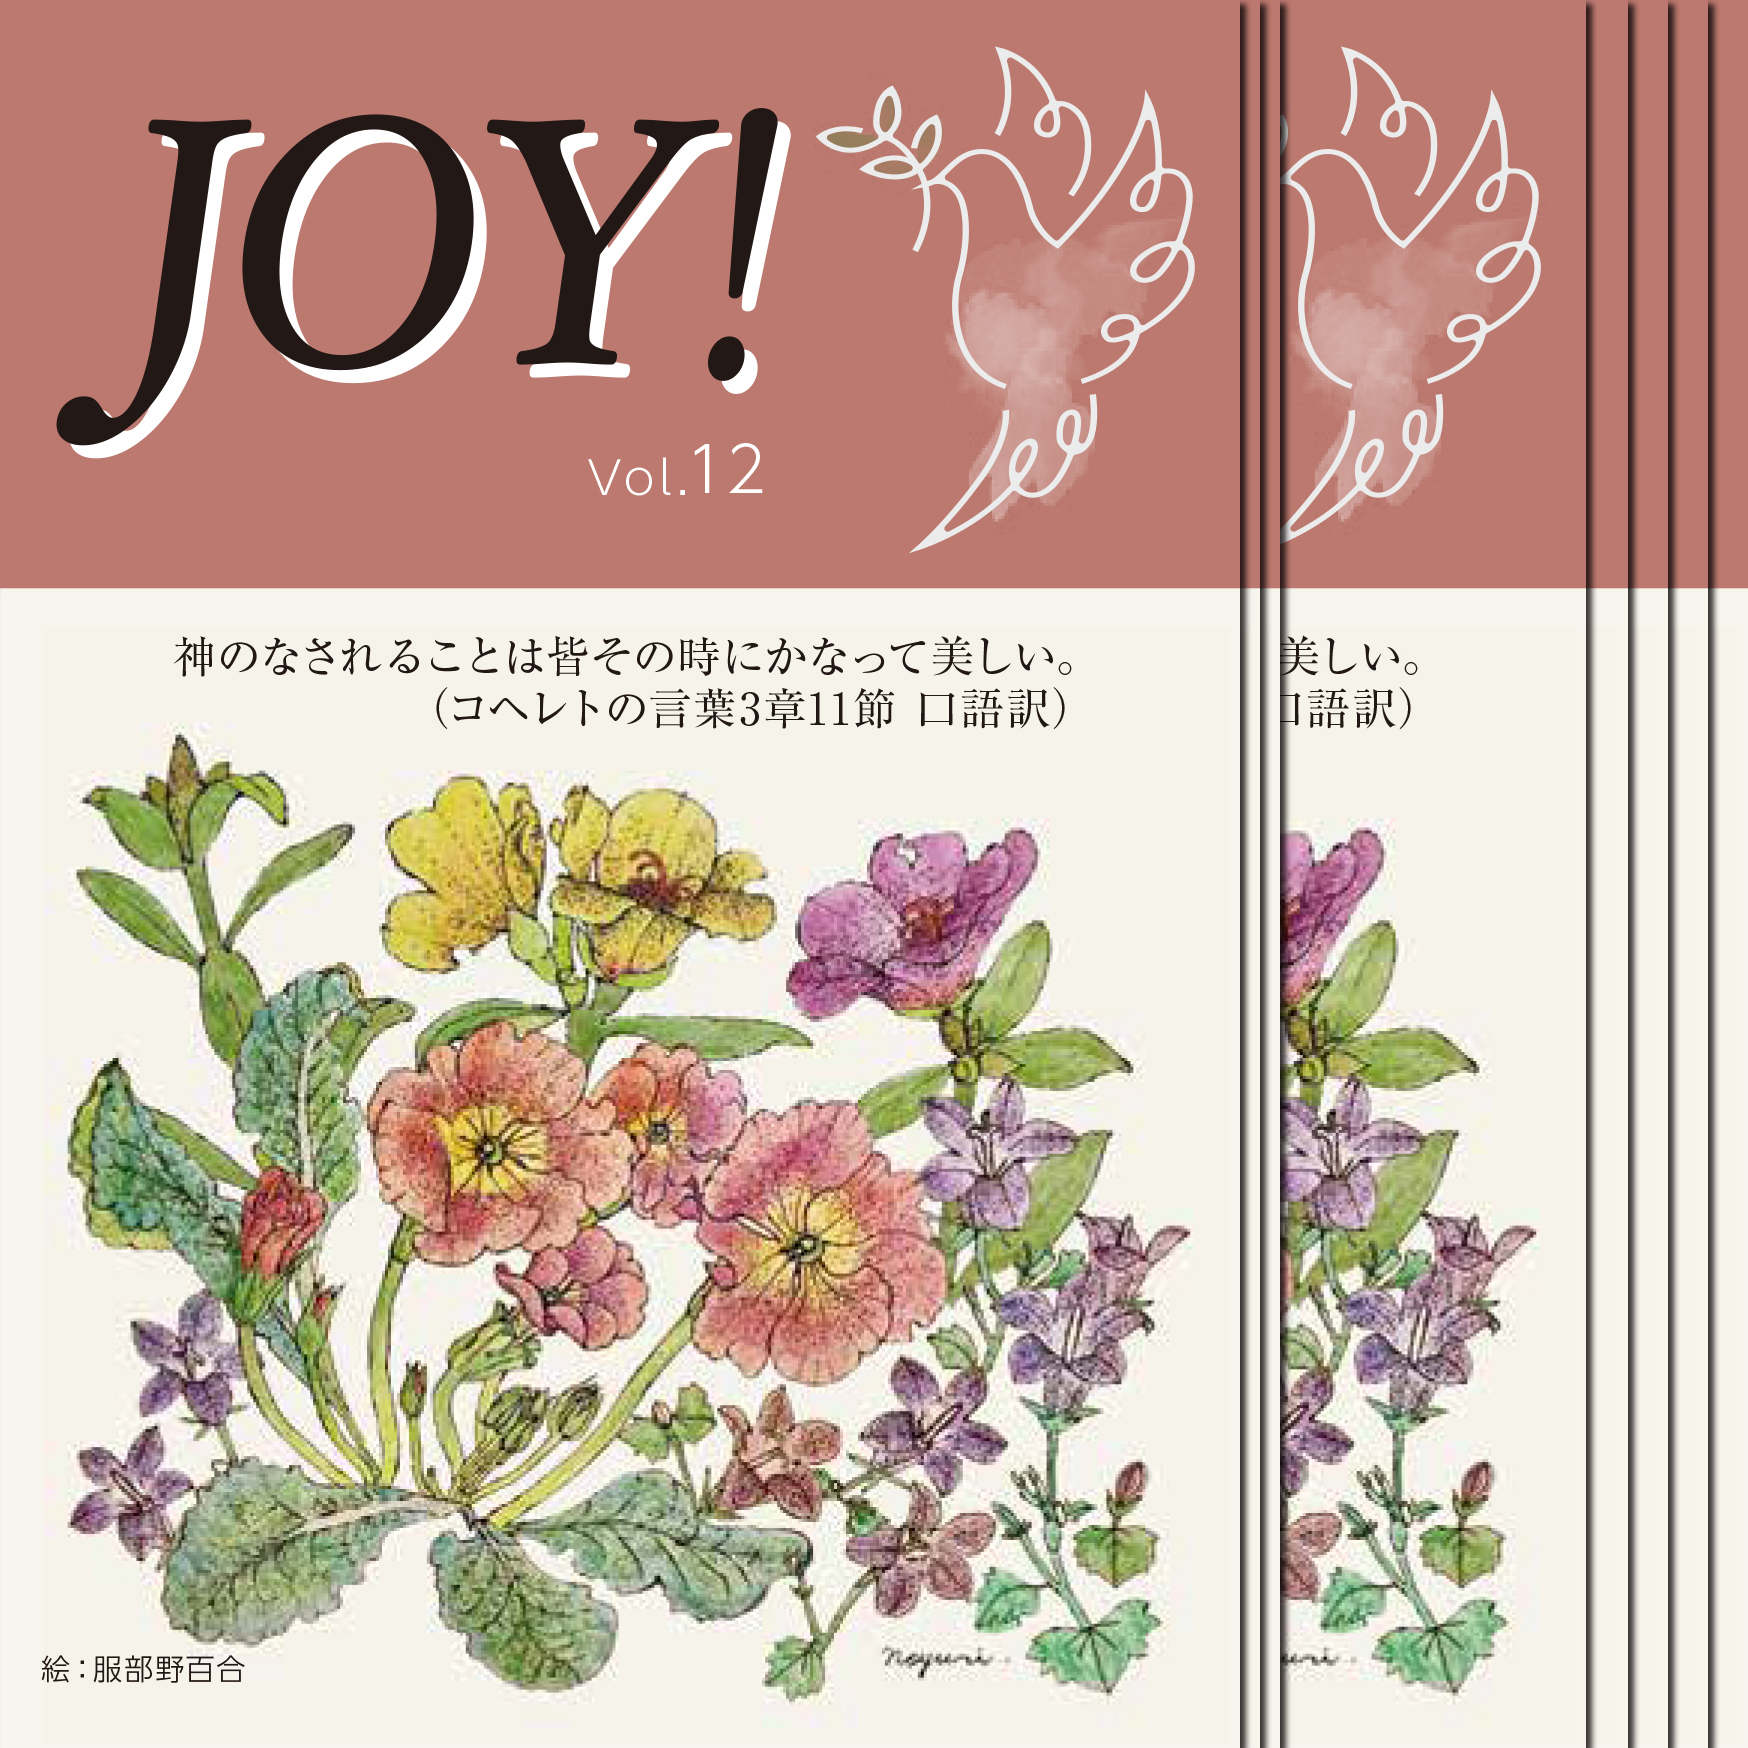 季刊紙 『JOY!』秋号配布中(Vol.12)